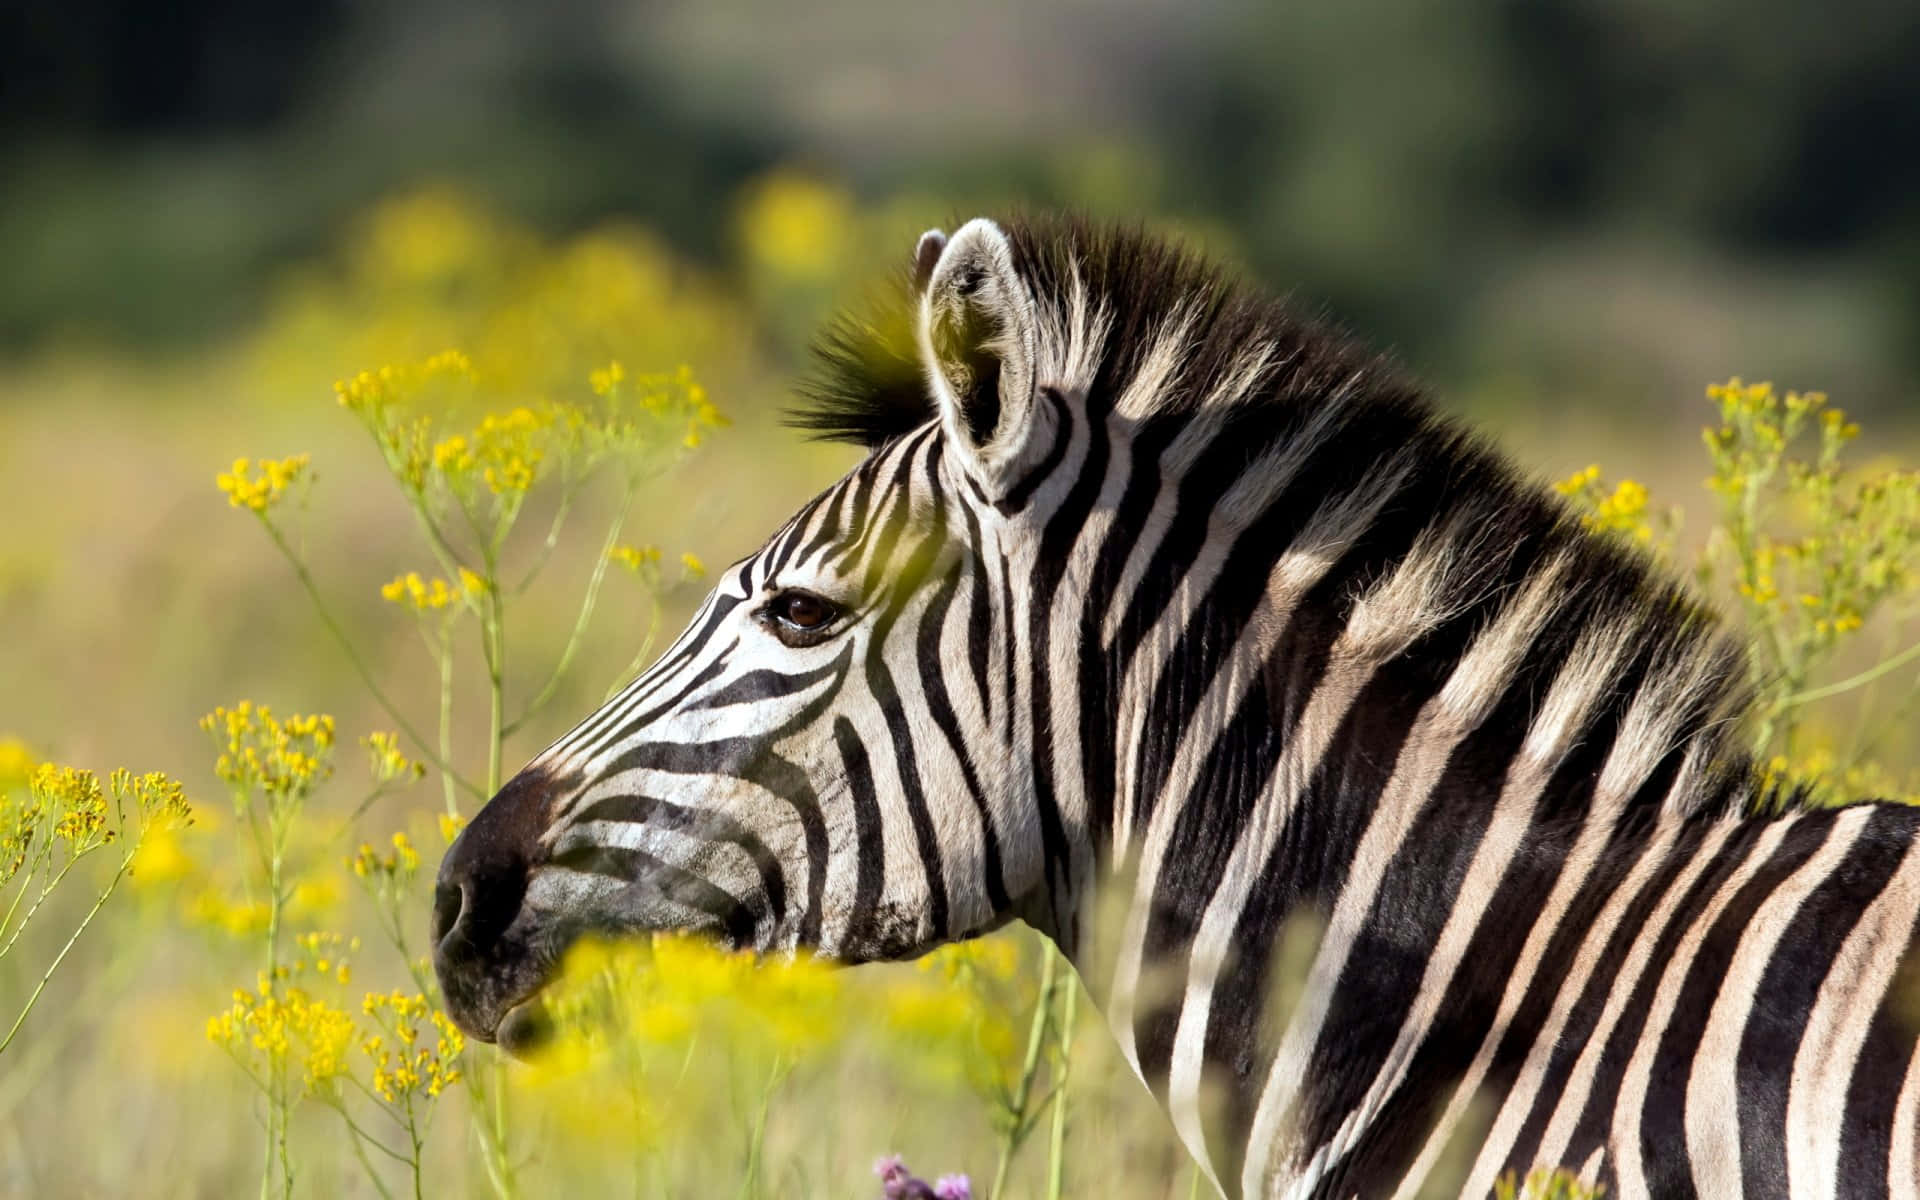 A zebra in a grassy field